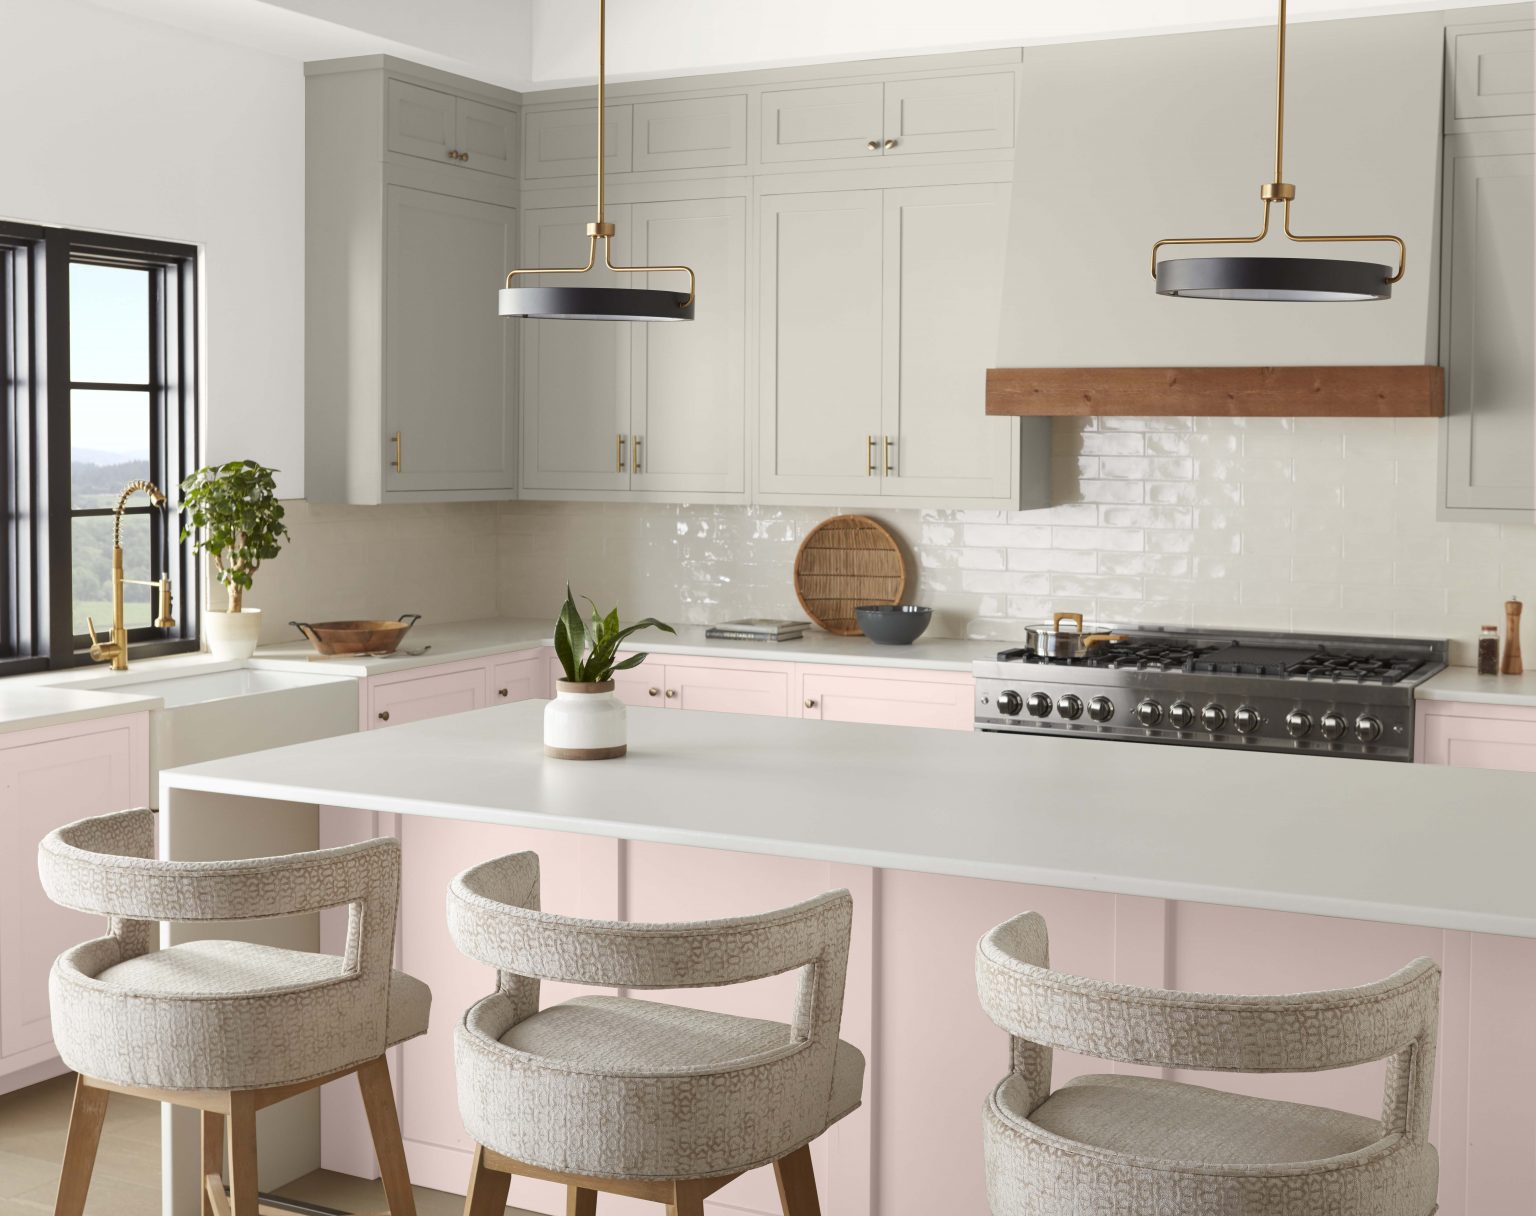 Une cuisine contemporaine aux armoires du haut peintes en gris clair et armoires du bas et îlot peints en rose clair neutre